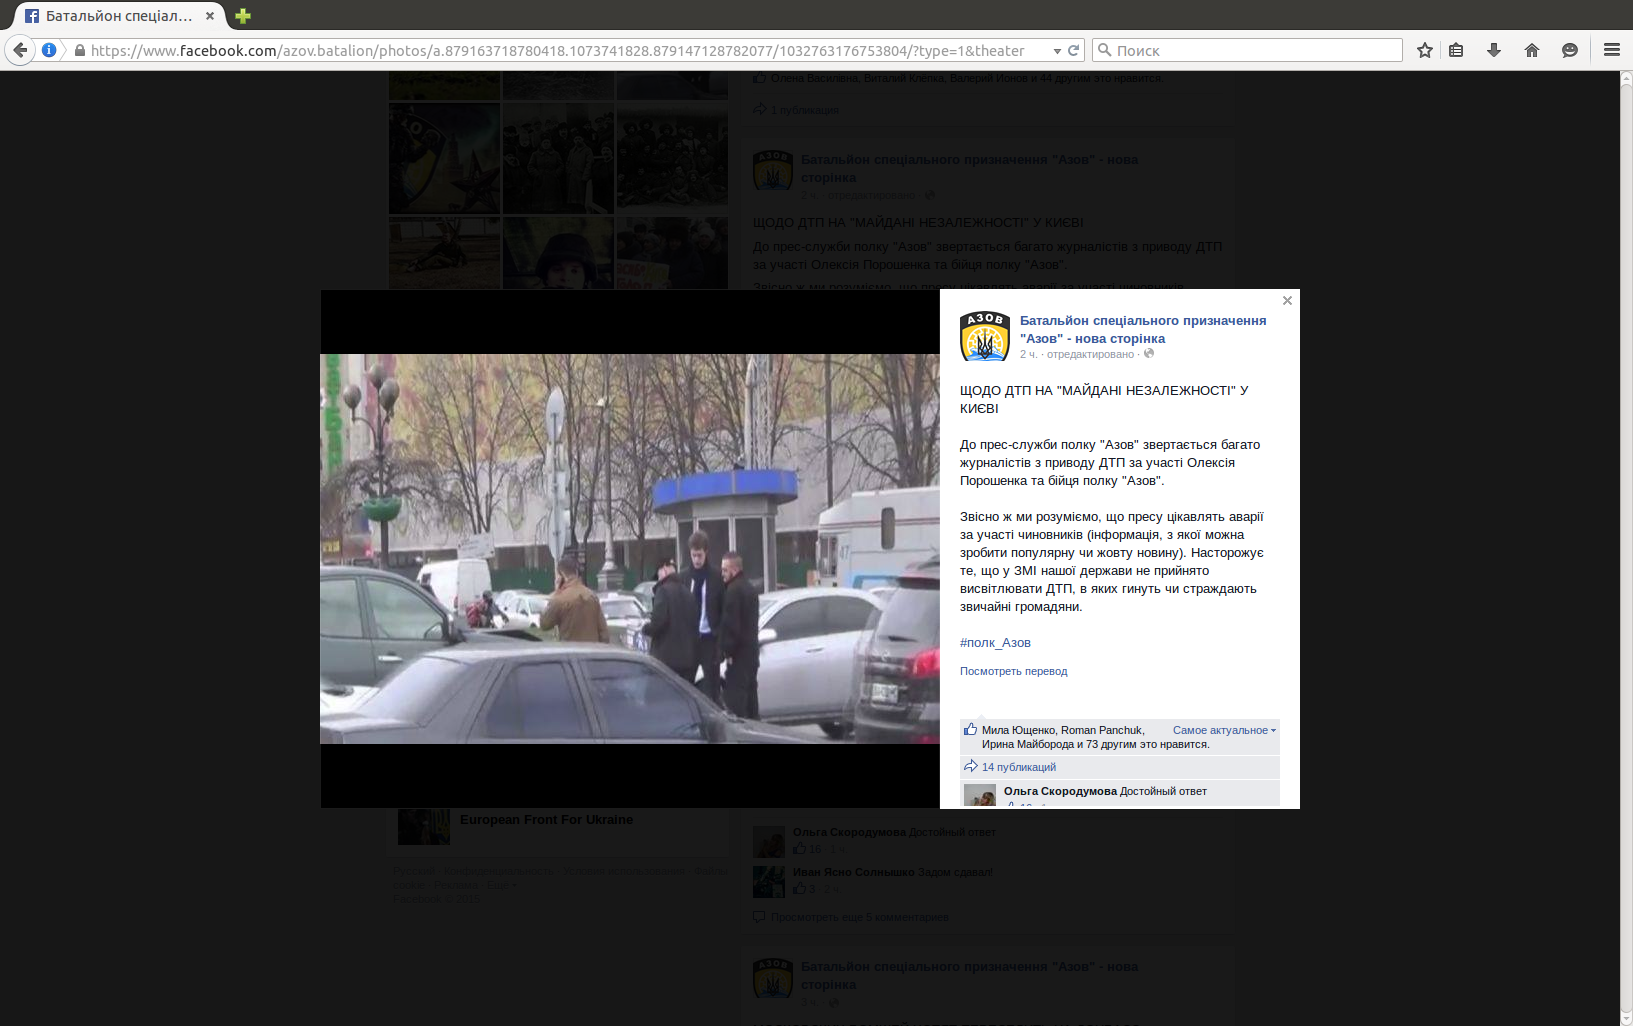 После редактирования из сообщения пропал последний абзац, остались только упреки в адрес СМИ за интерес к ДТП. Скриншот страницы полка “Азов“ в Facebook